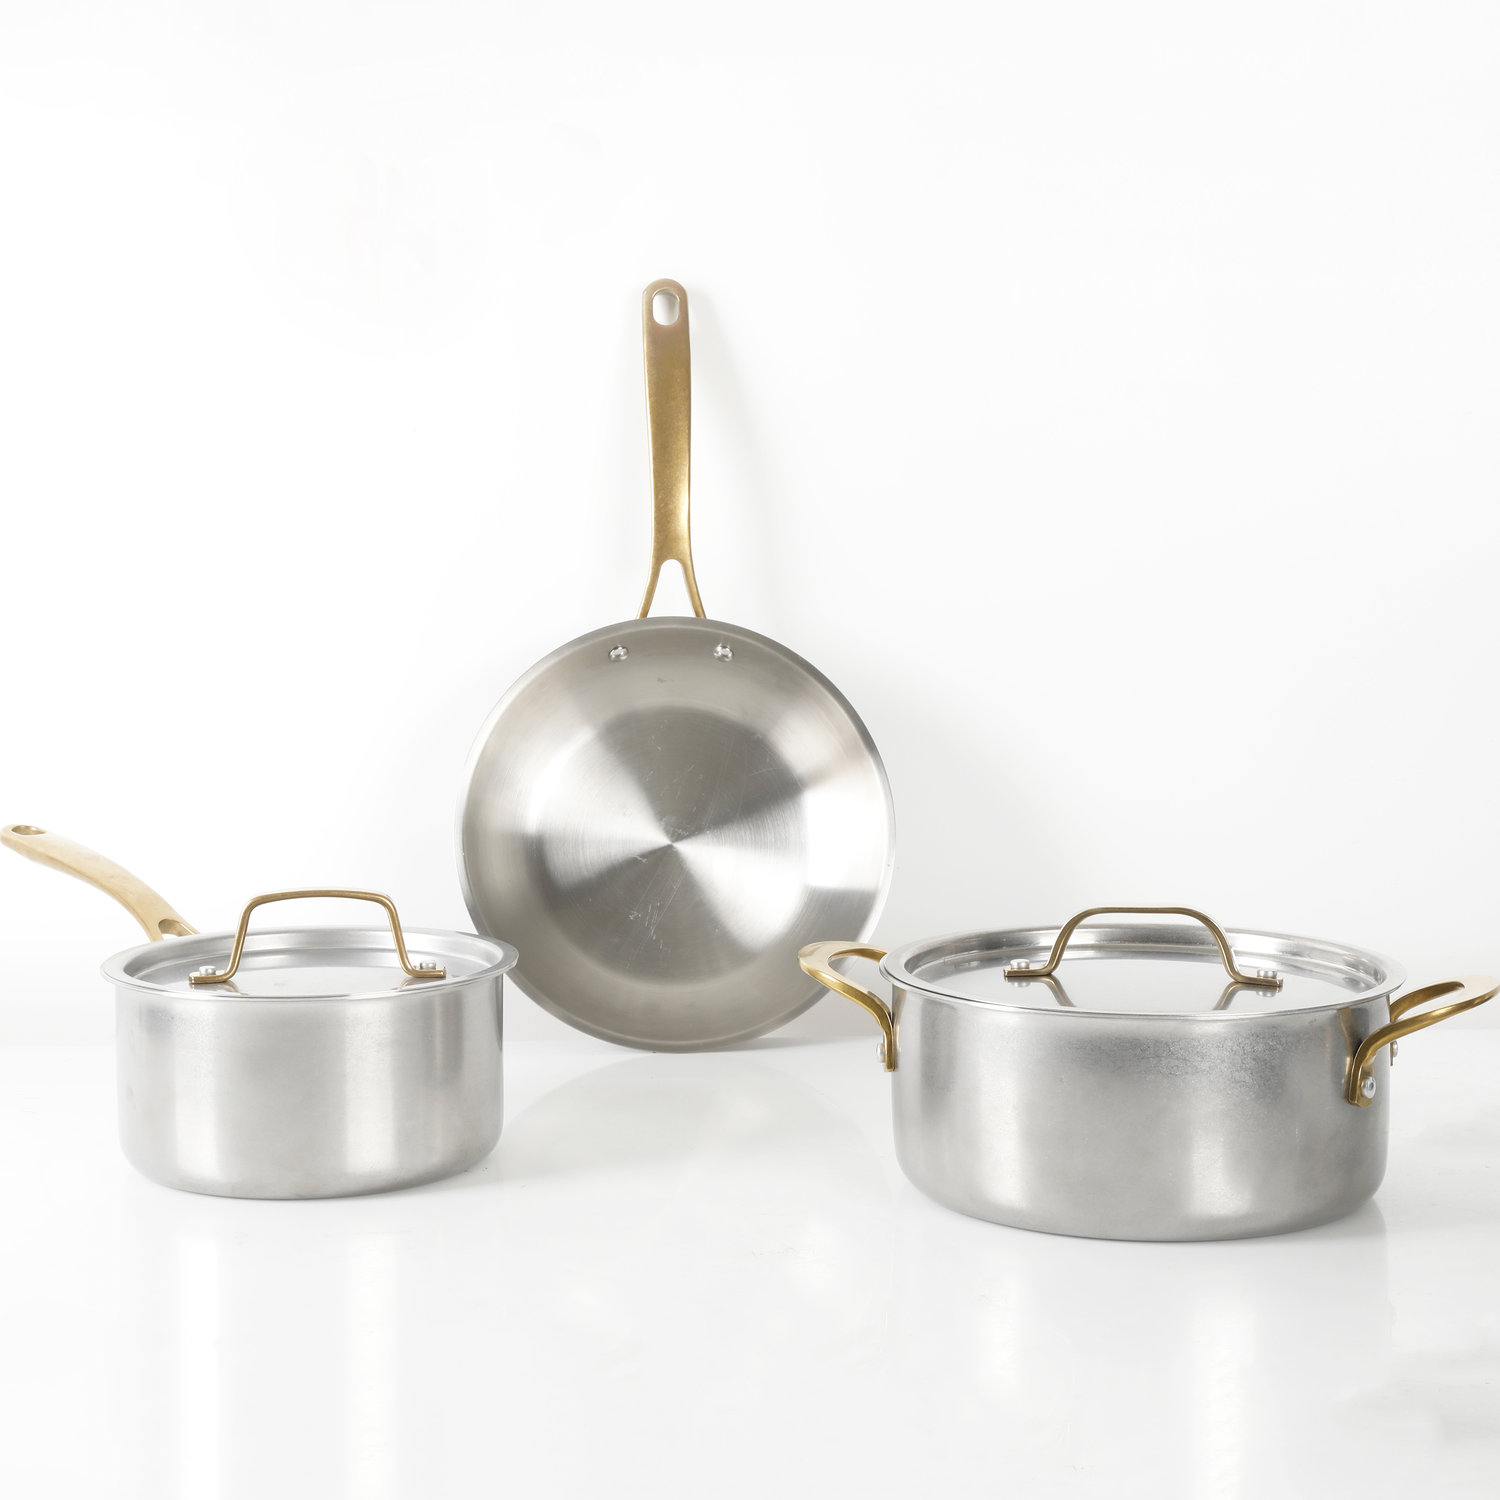 https://assets.wfcdn.com/im/85787823/compr-r85/2224/222411278/martha-stewart-5-piece-stainless-steel-cookware-set-with-brass-handles.jpg